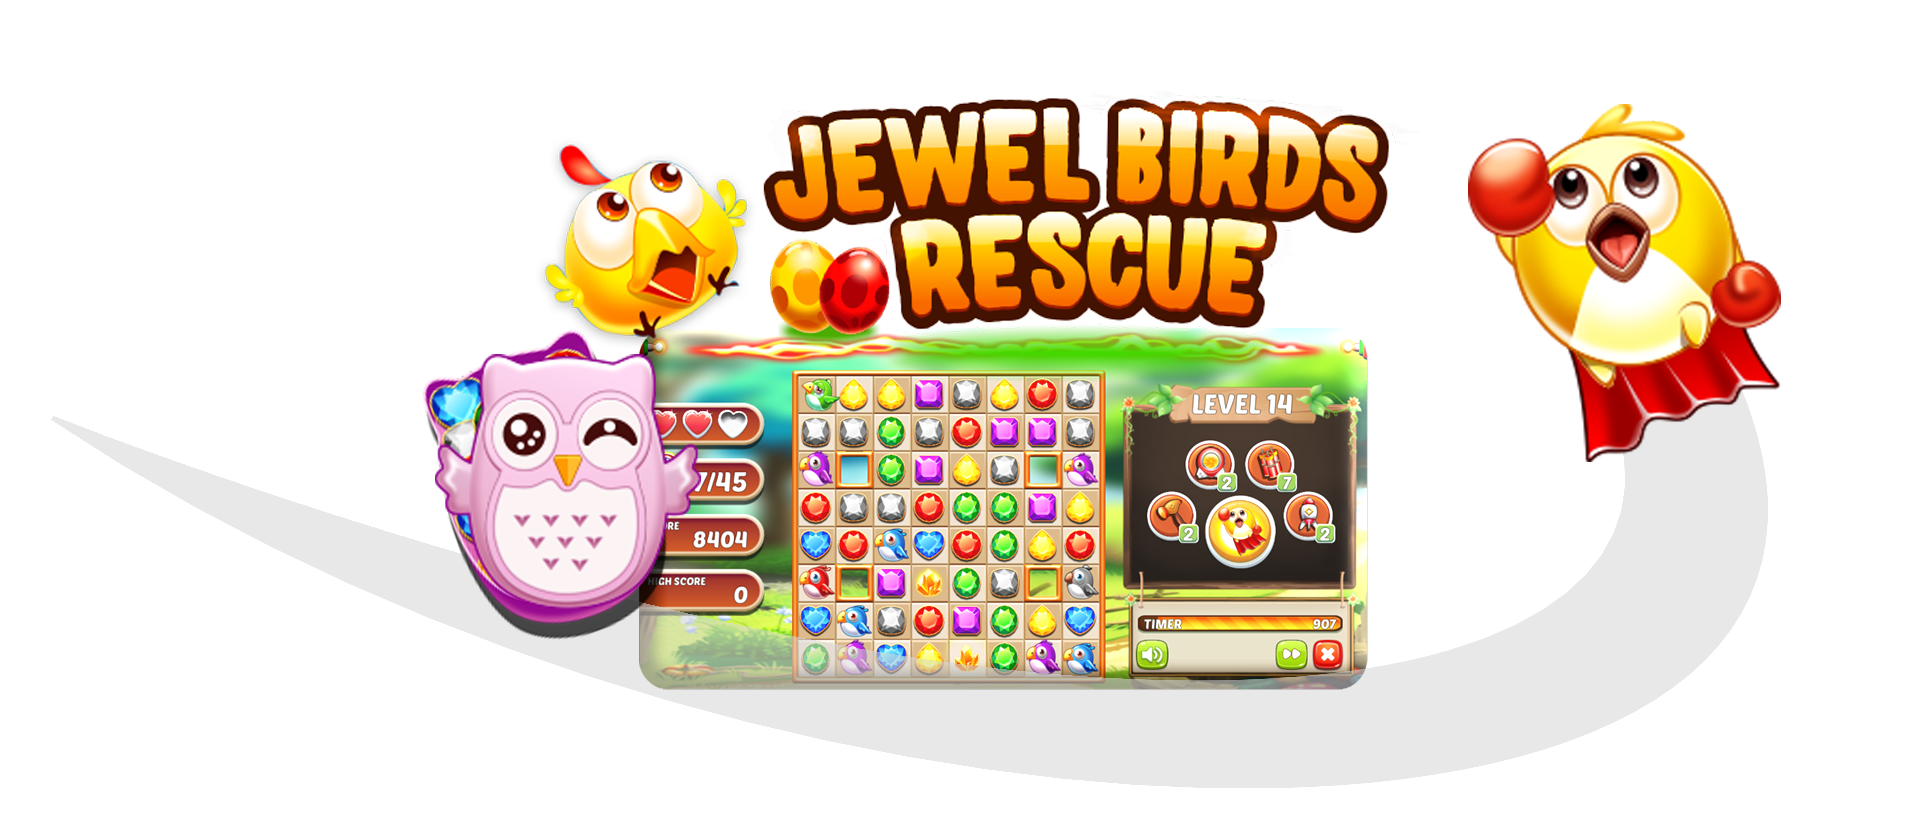 Jewel Birds Online Game Tournaments